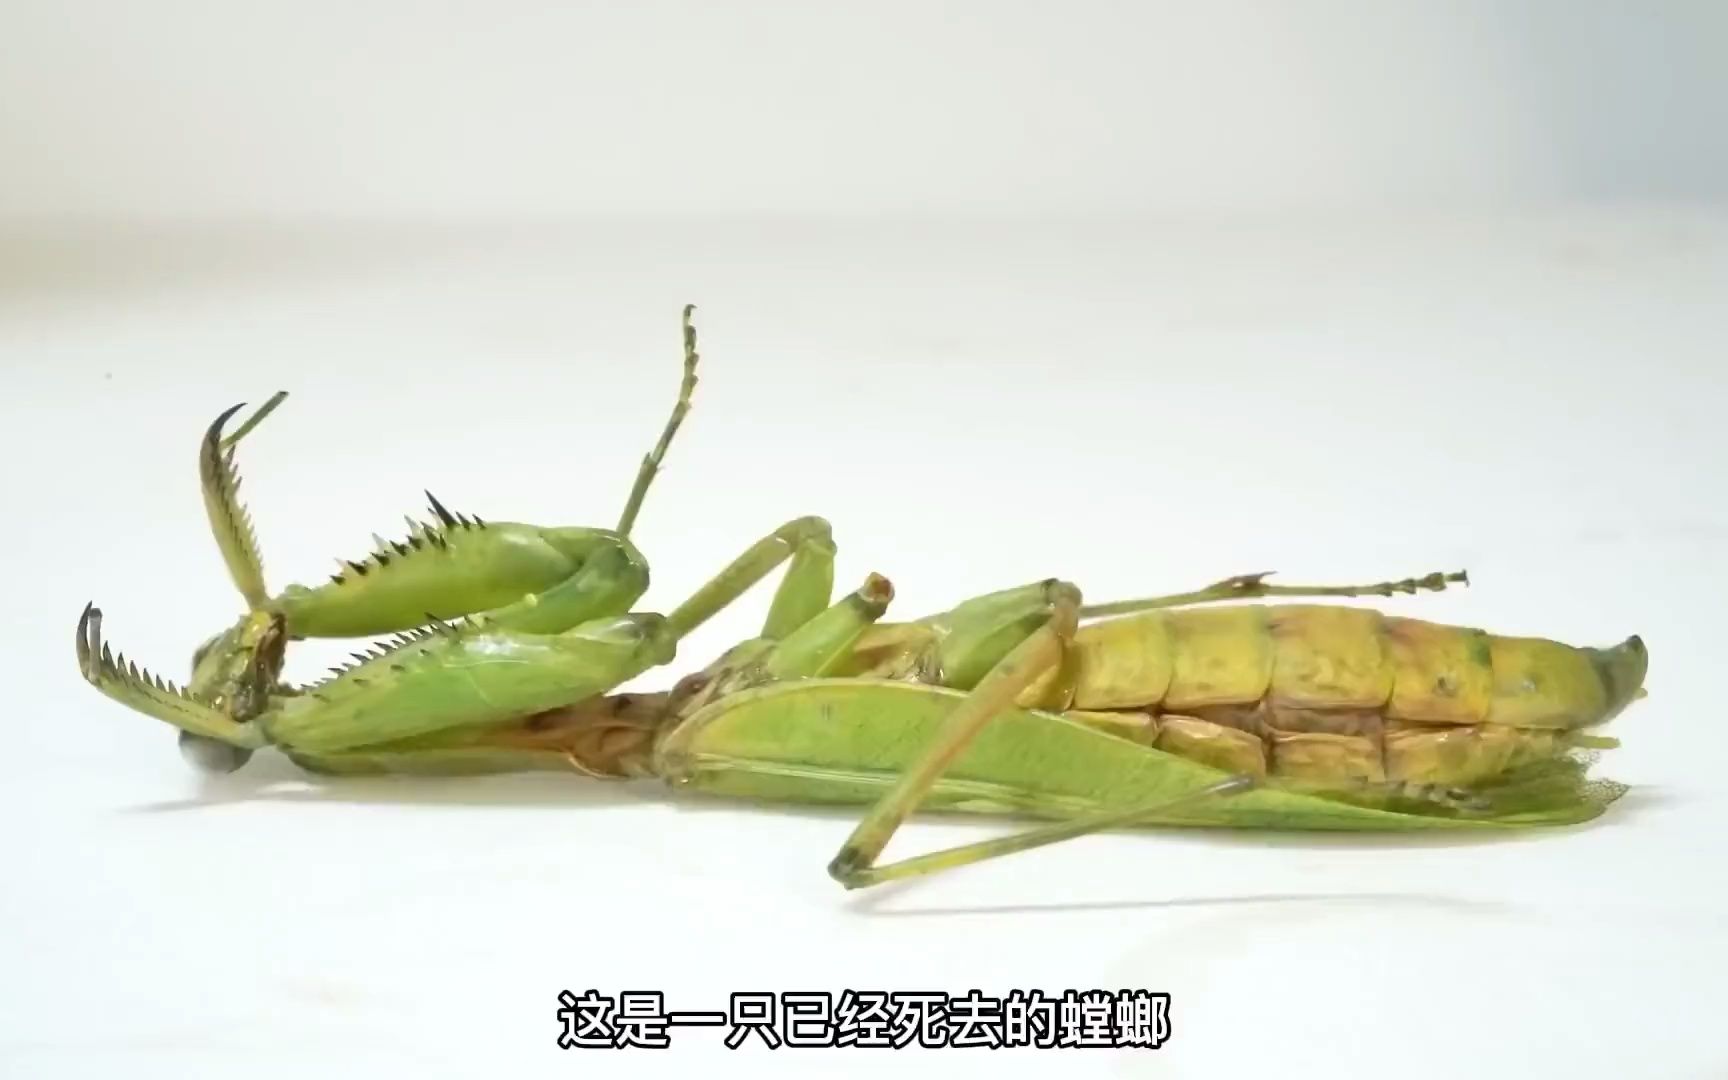 趣味昆虫实验,螳螂会吃自己的同类吗?同类肚子里面的铁线虫它会吃吗